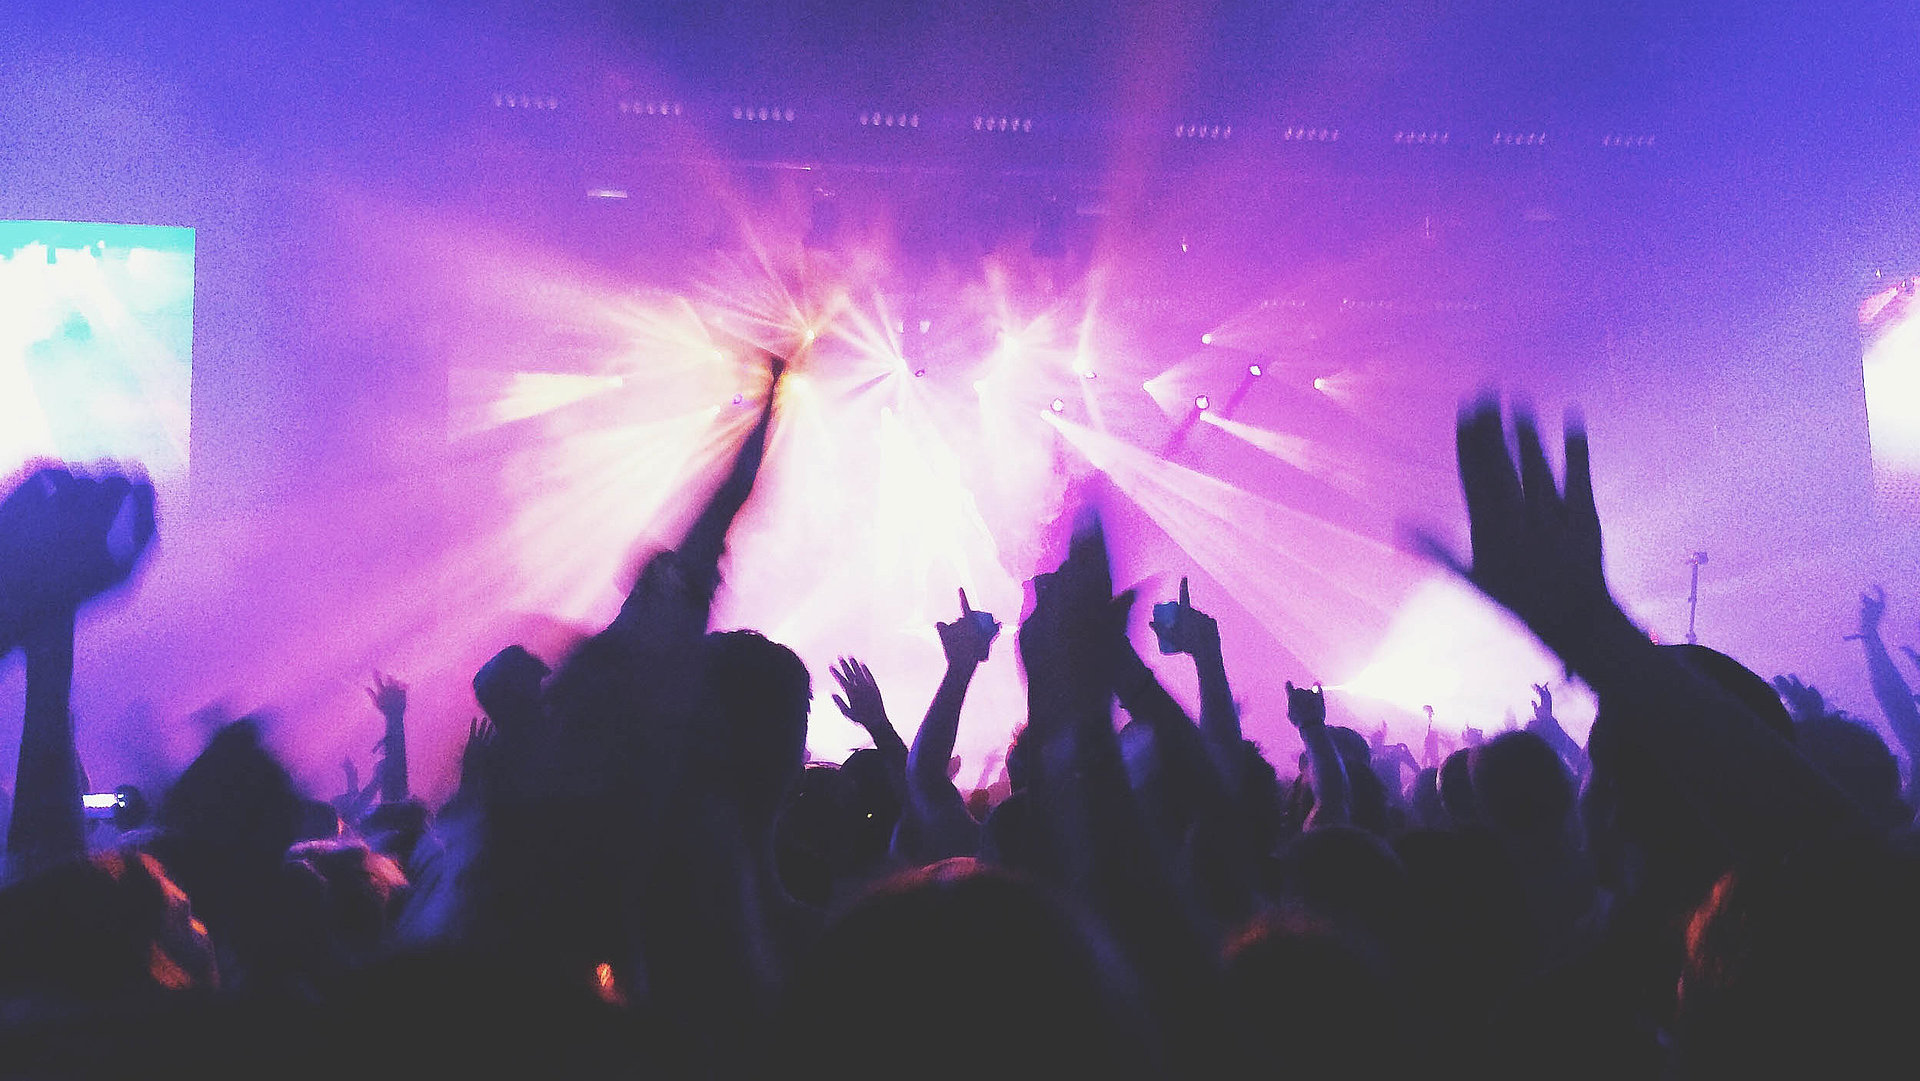 Events und Veranstaltungen in Mittelfranken - in einem Club; viele Silhouetten feiern im violetten Scheinwerferlicht